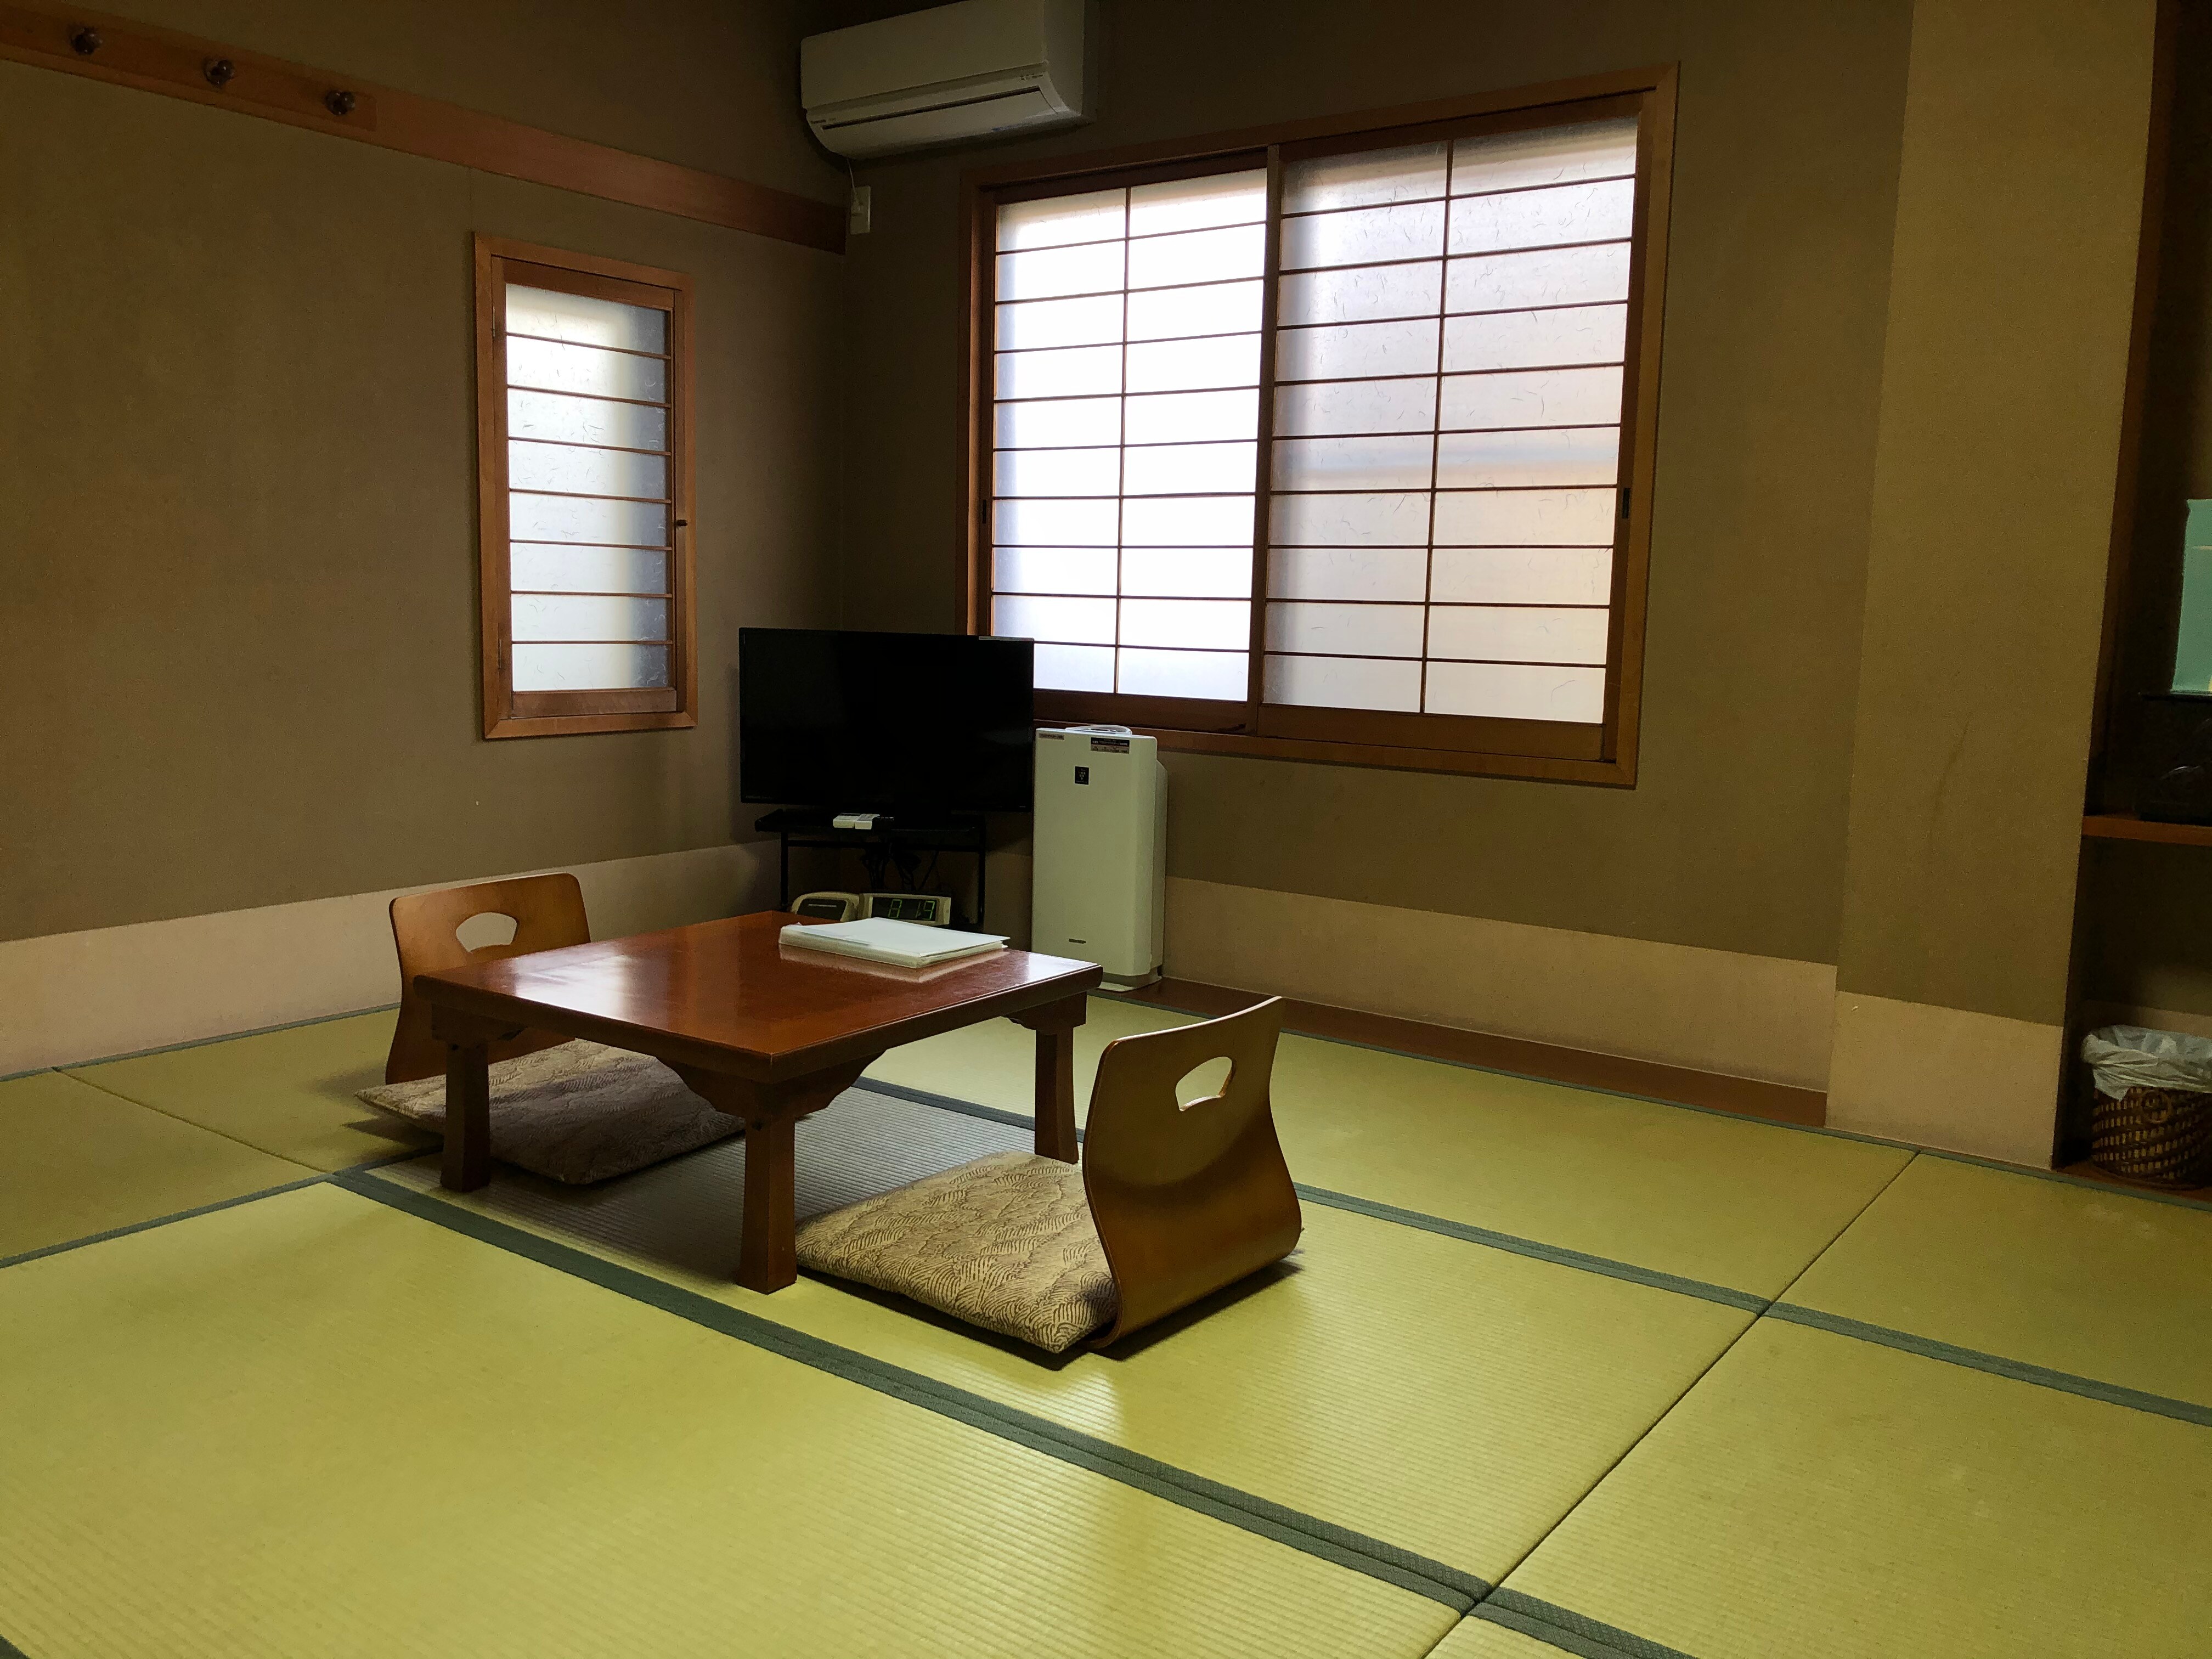 ตัวอย่างห้อง: ห้องสไตล์ญี่ปุ่นสำหรับ 2 คน